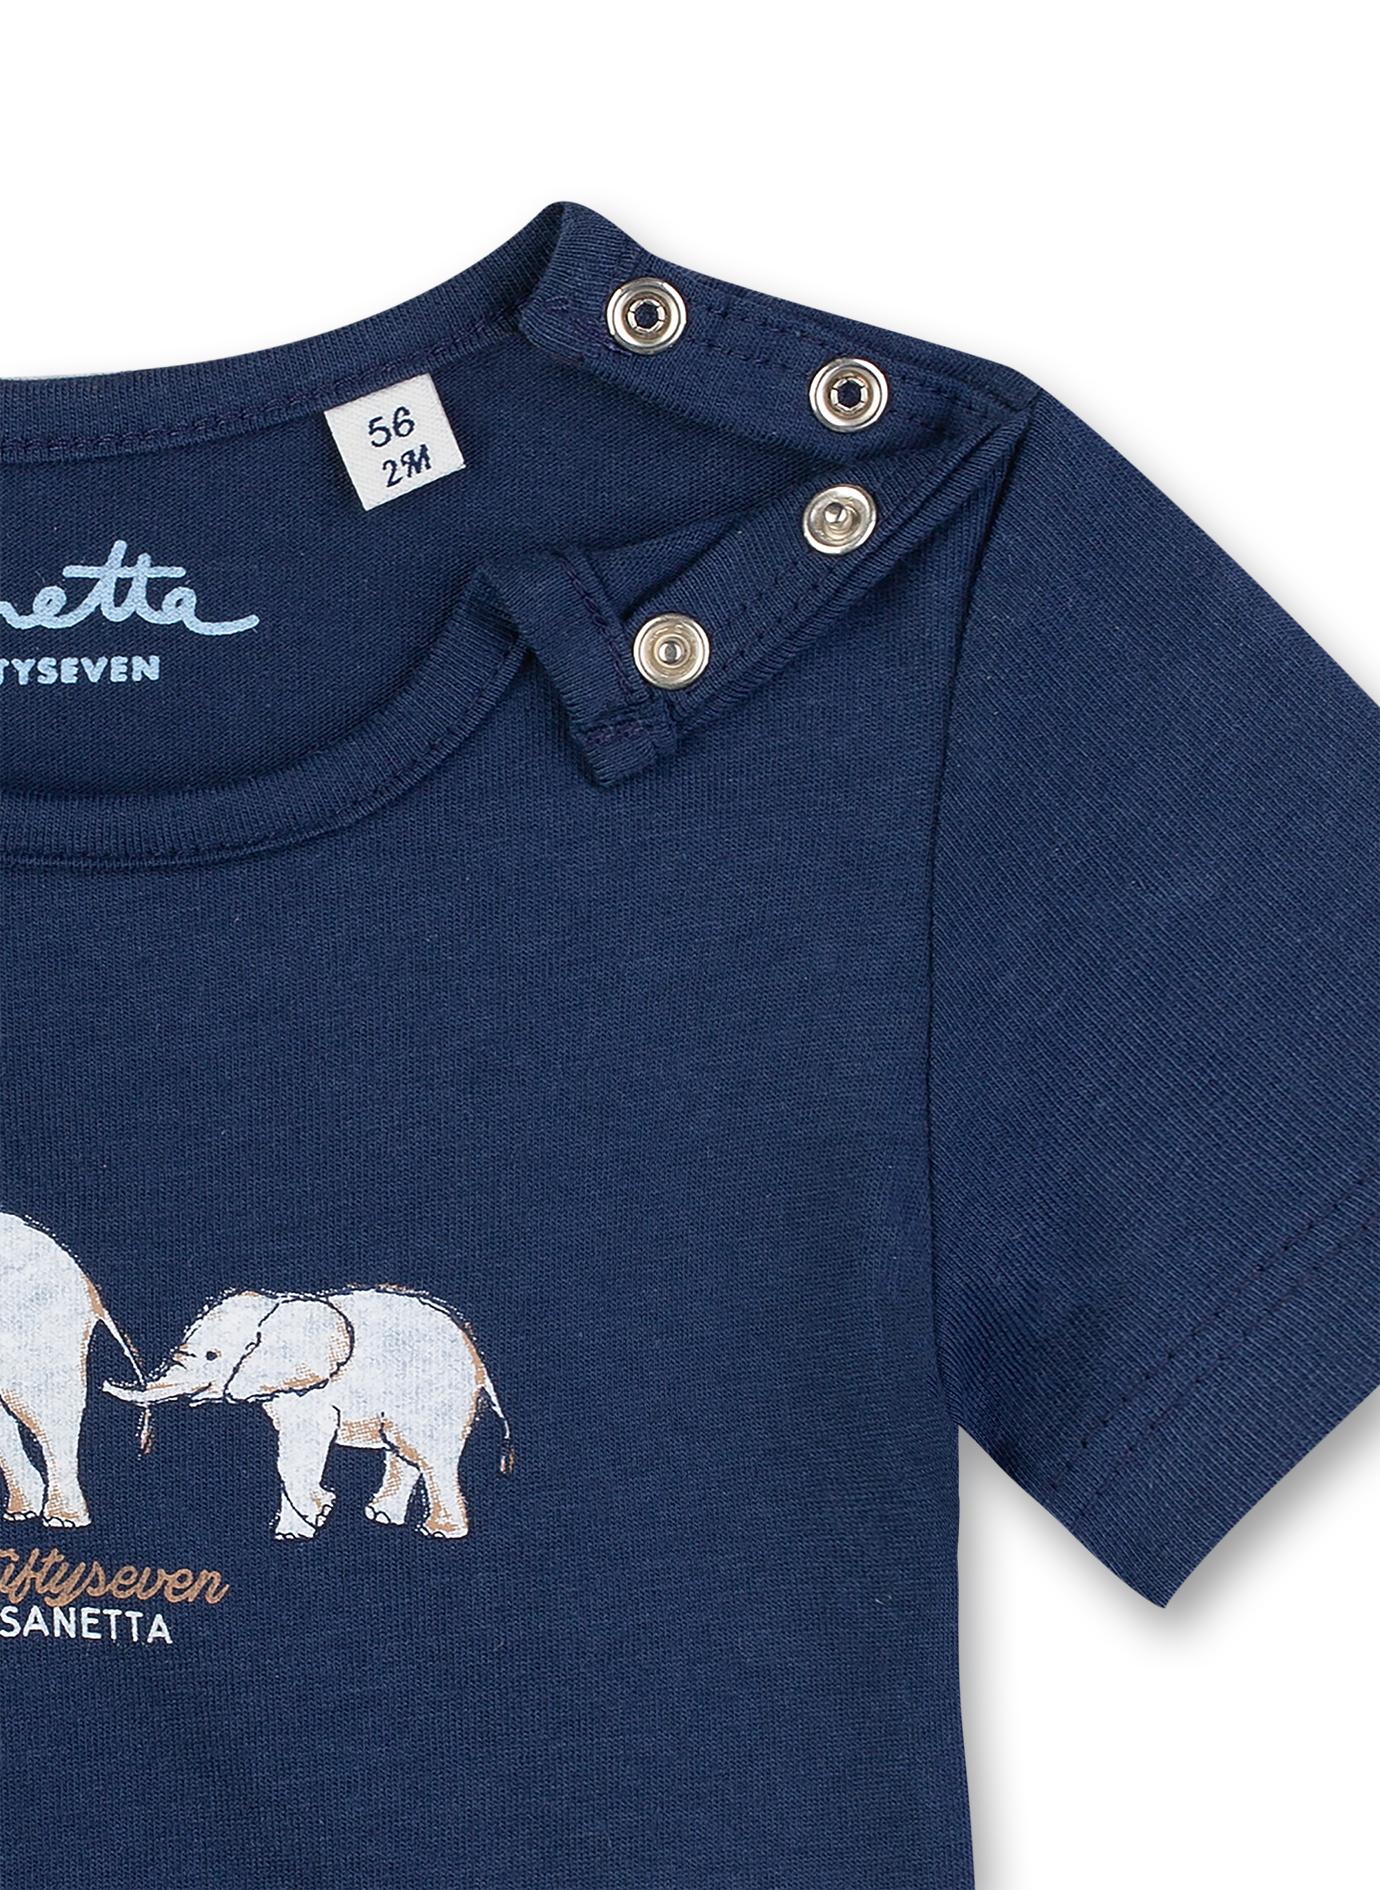 Jungen T-Shirt Dunkelblau Smart Elephant